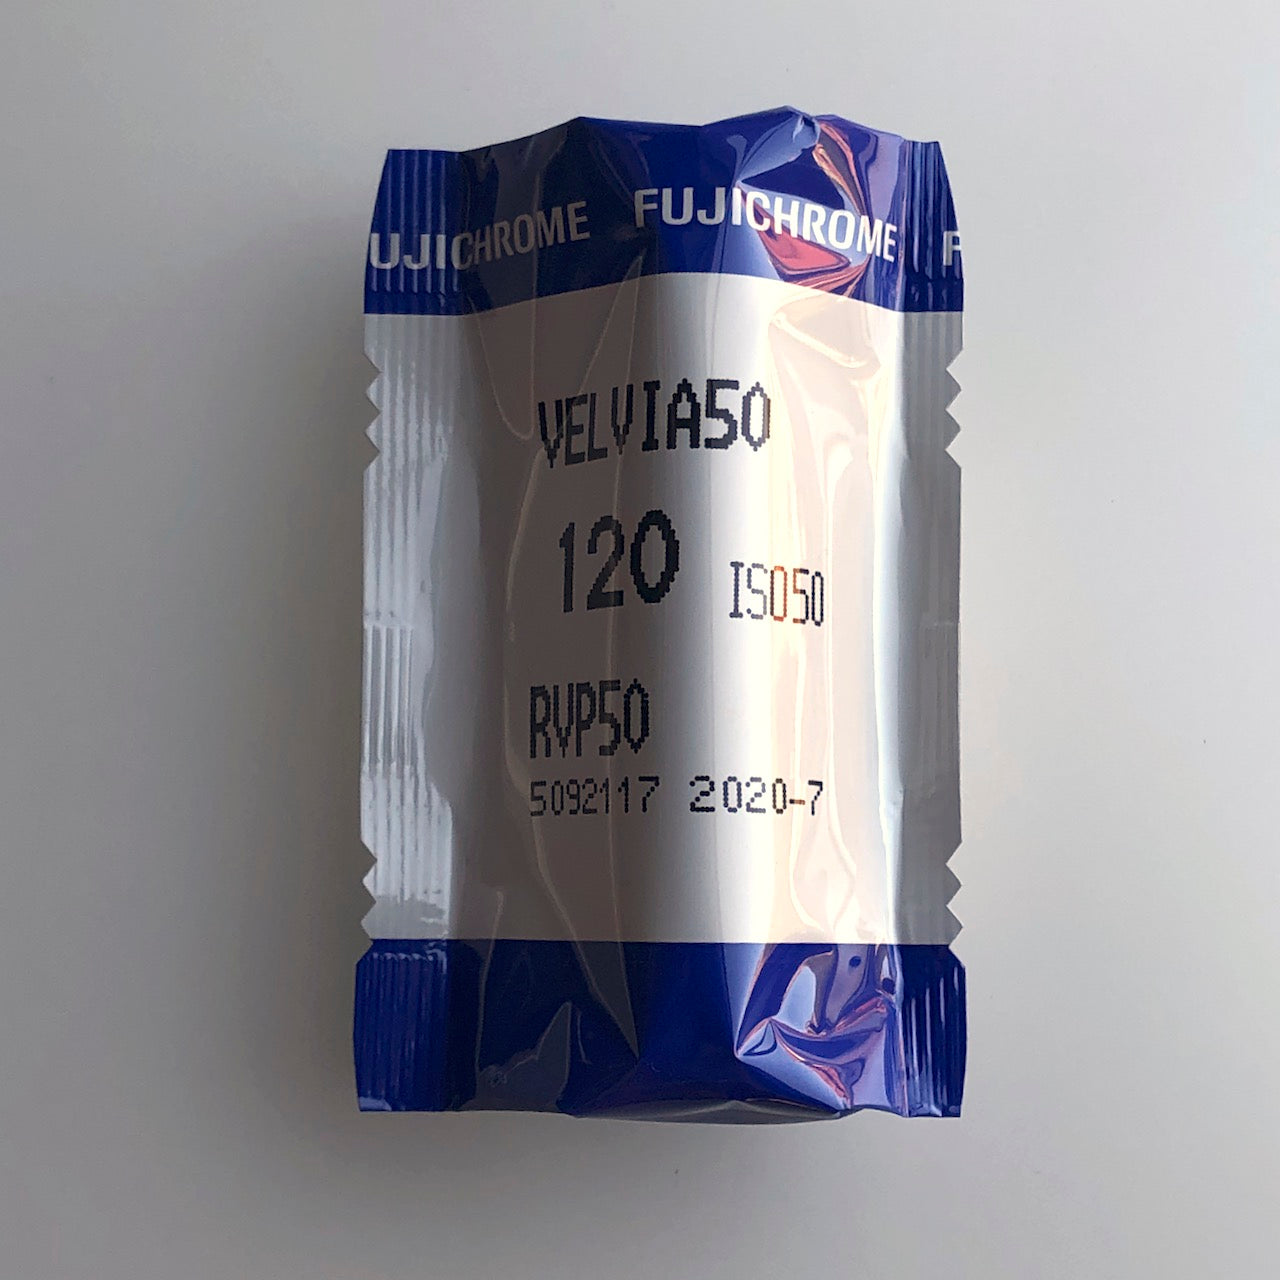 Fujichrome Velvia 50 120 (expired July 2020)